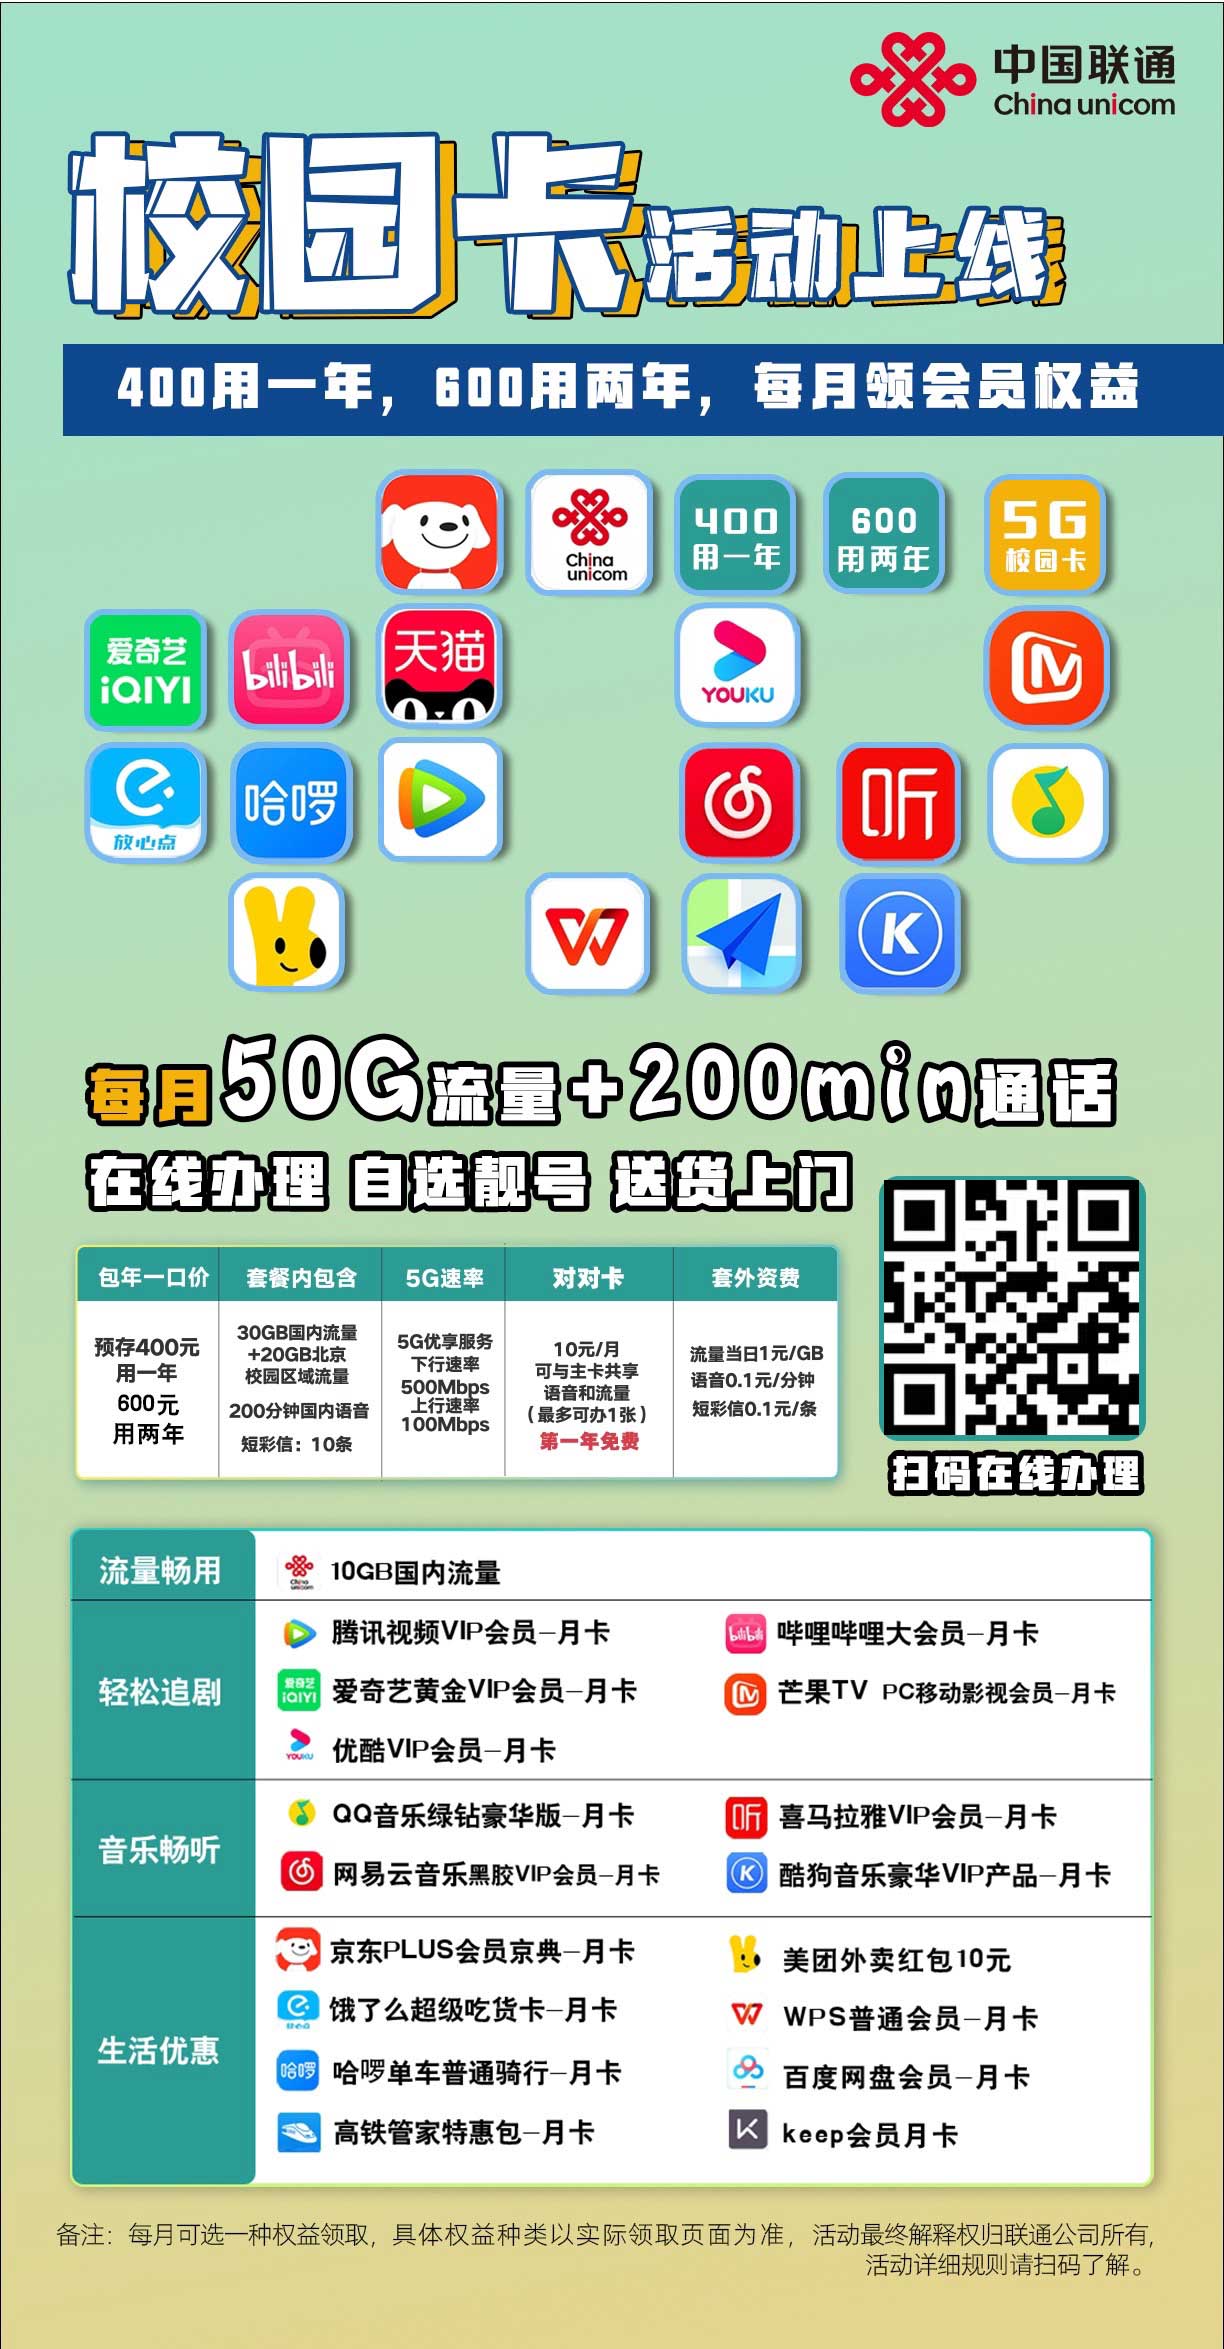 【通知】中国联通校园卡活动上线，400/年和600/2年限时优惠